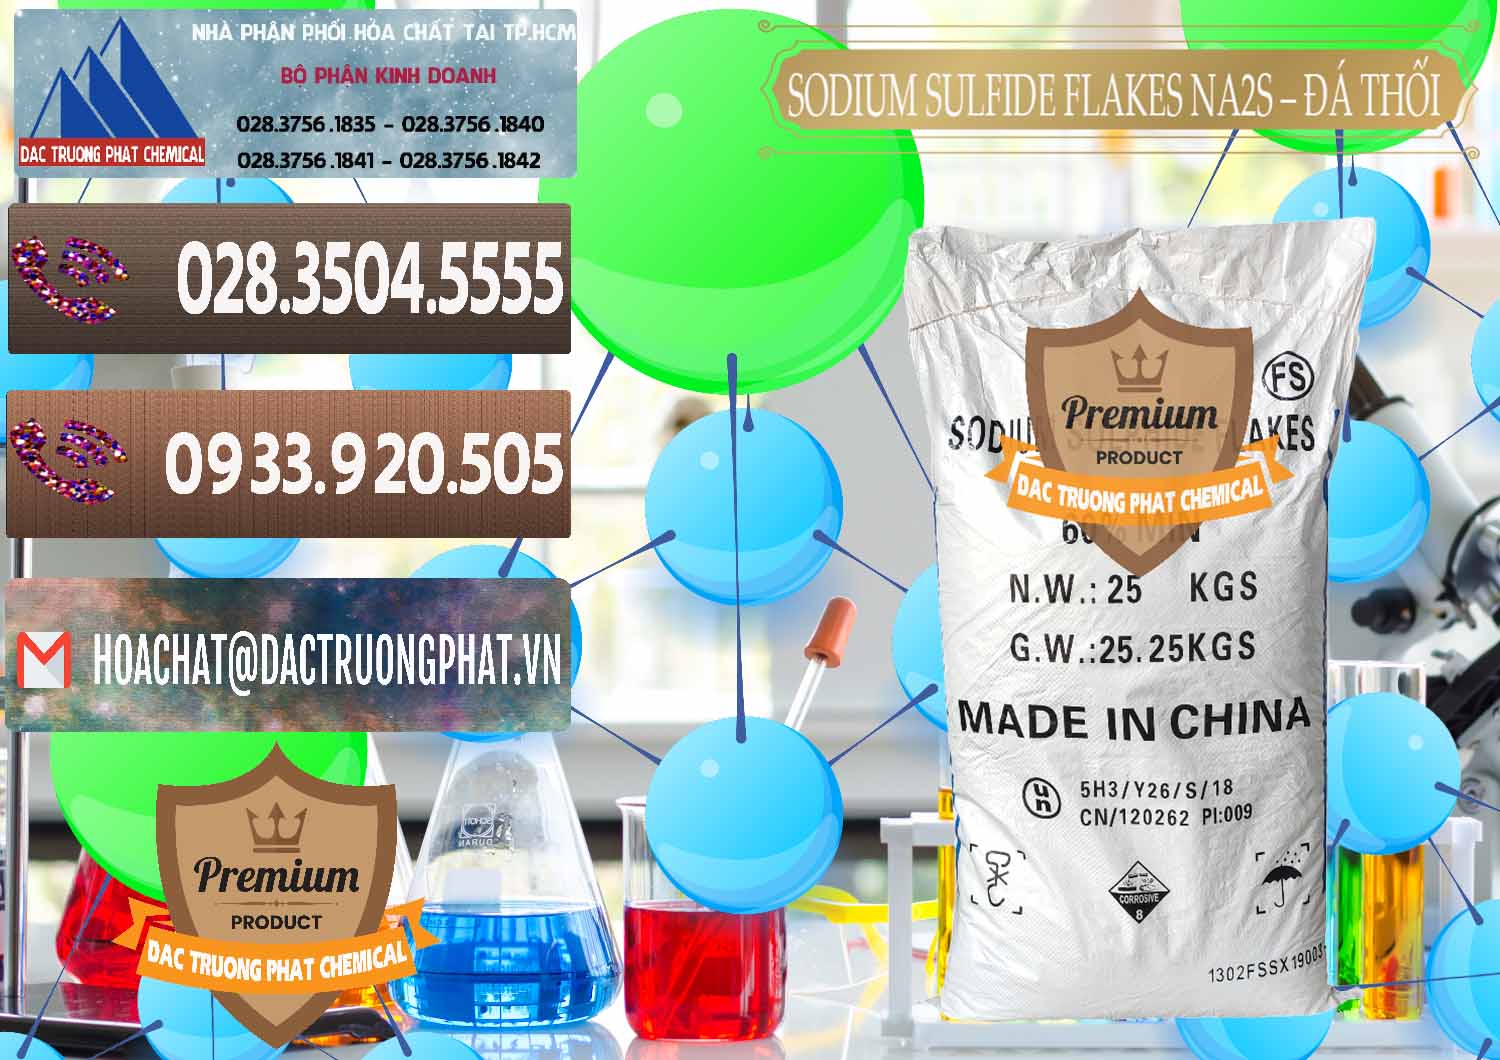 Đơn vị nhập khẩu ( bán ) Sodium Sulfide Flakes NA2S – Đá Thối Đỏ Trung Quốc China - 0150 - Nơi chuyên bán & phân phối hóa chất tại TP.HCM - hoachatviet.net